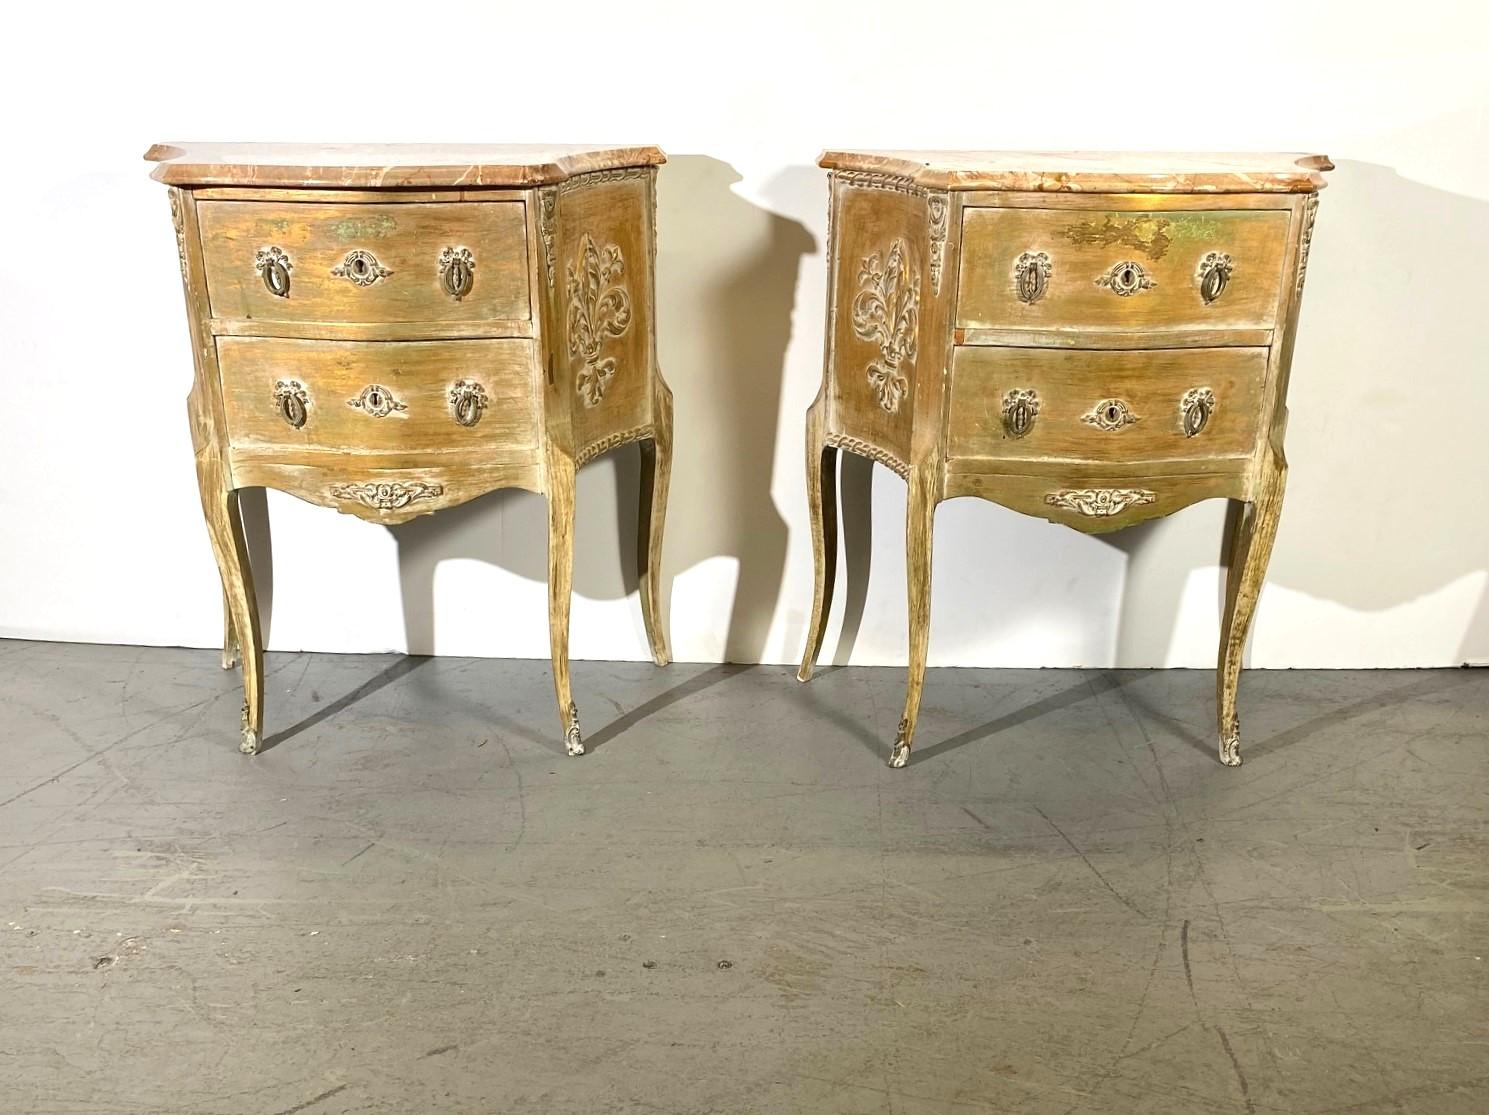 Tables de nuit italiennes en marbre de style Louis XV. Deux tiroirs avec poignées en laiton.